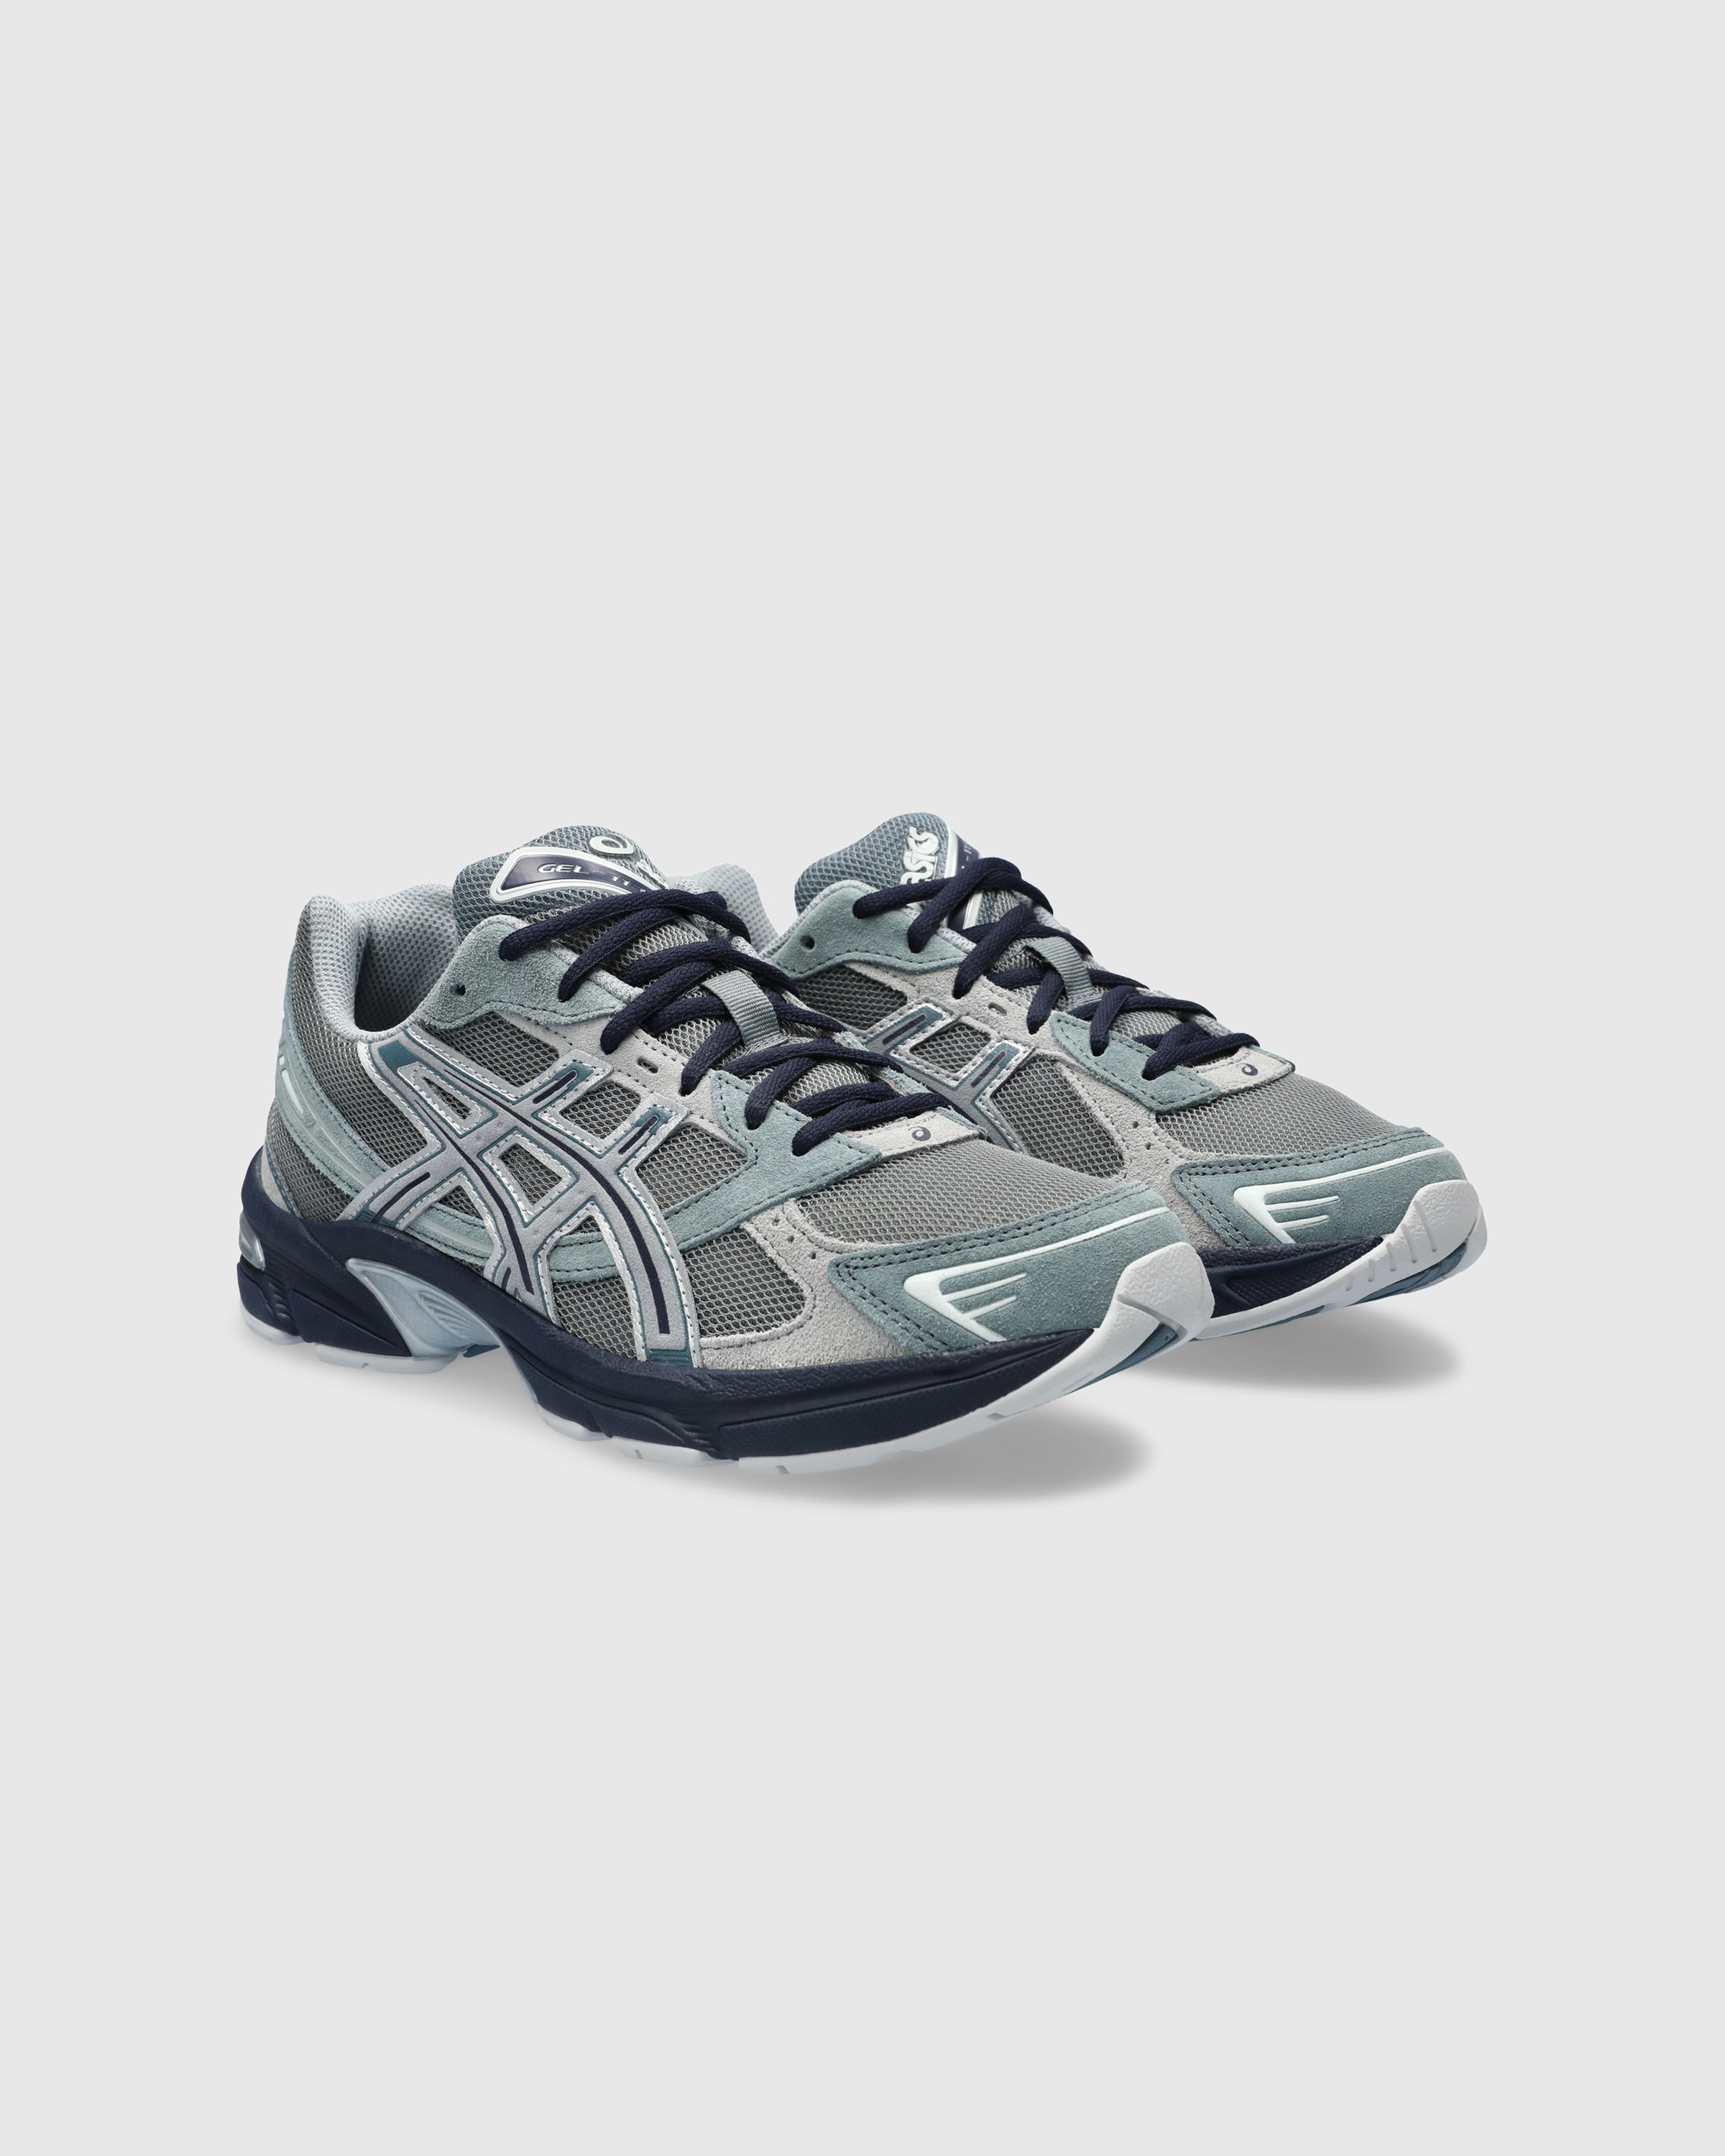 asics - GEL-1130 Steel Gray/Sheet Rock - Footwear - Grey - Image 3